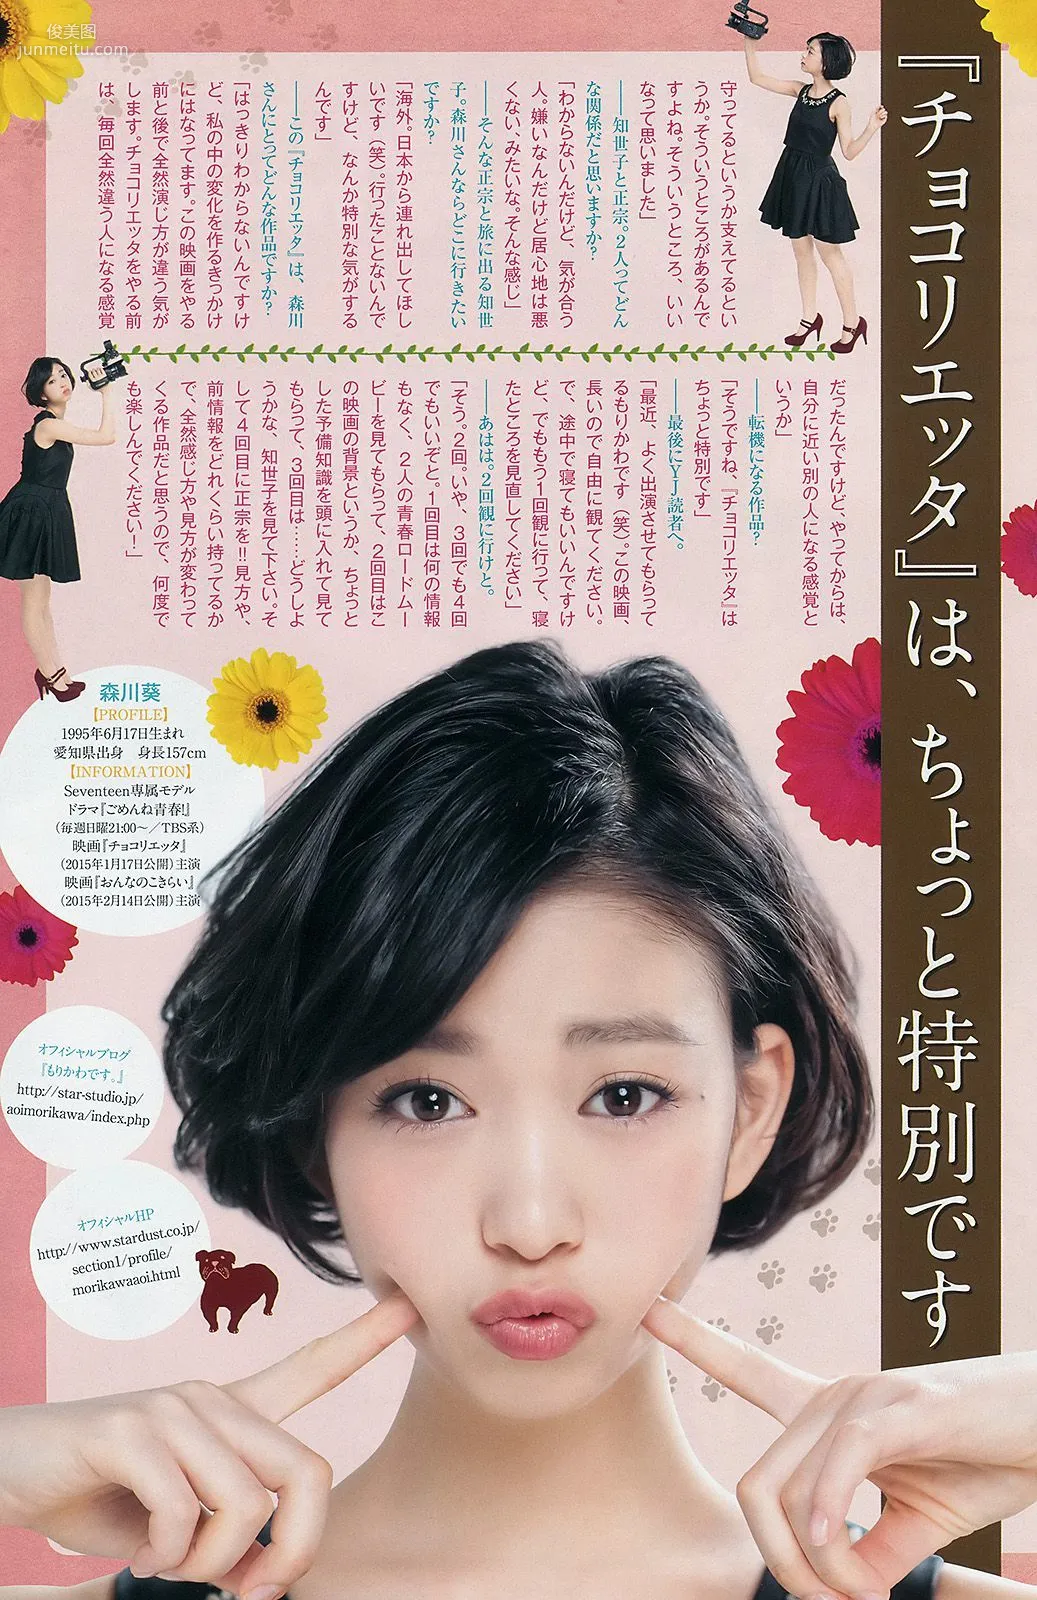 本田翼 内田真礼 [Weekly Young Jump] 2015年No.02 写真杂志9